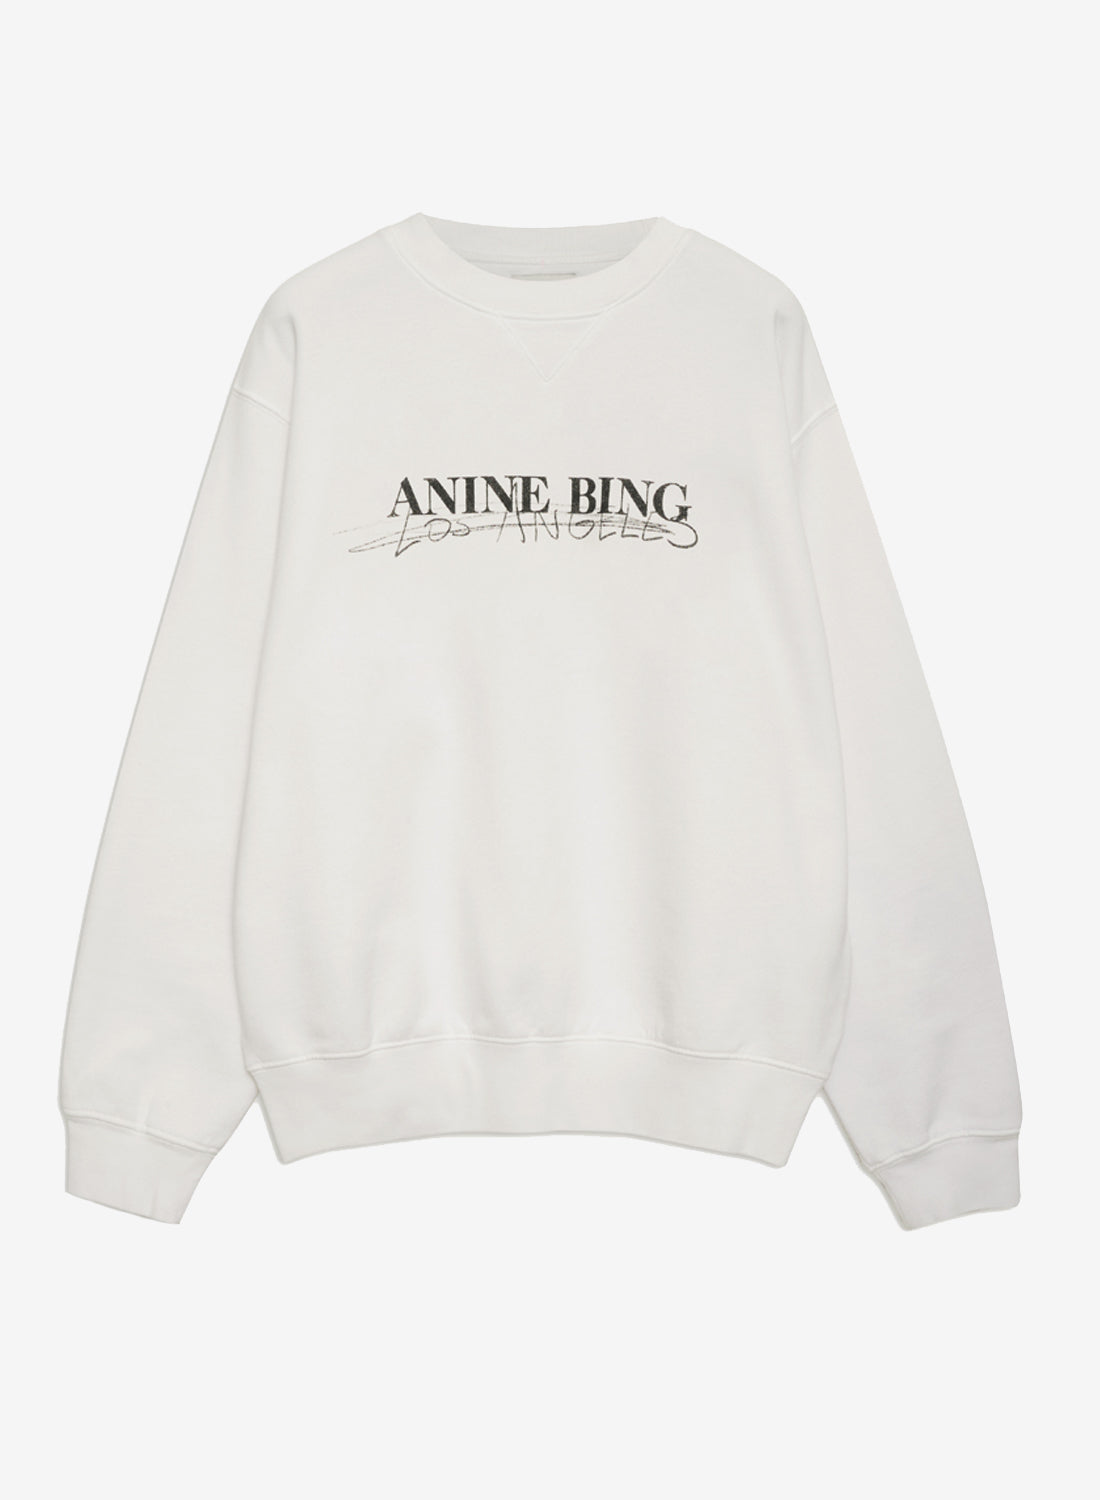 Anine Bing Ramona Sweatshirt Doodle Ivory